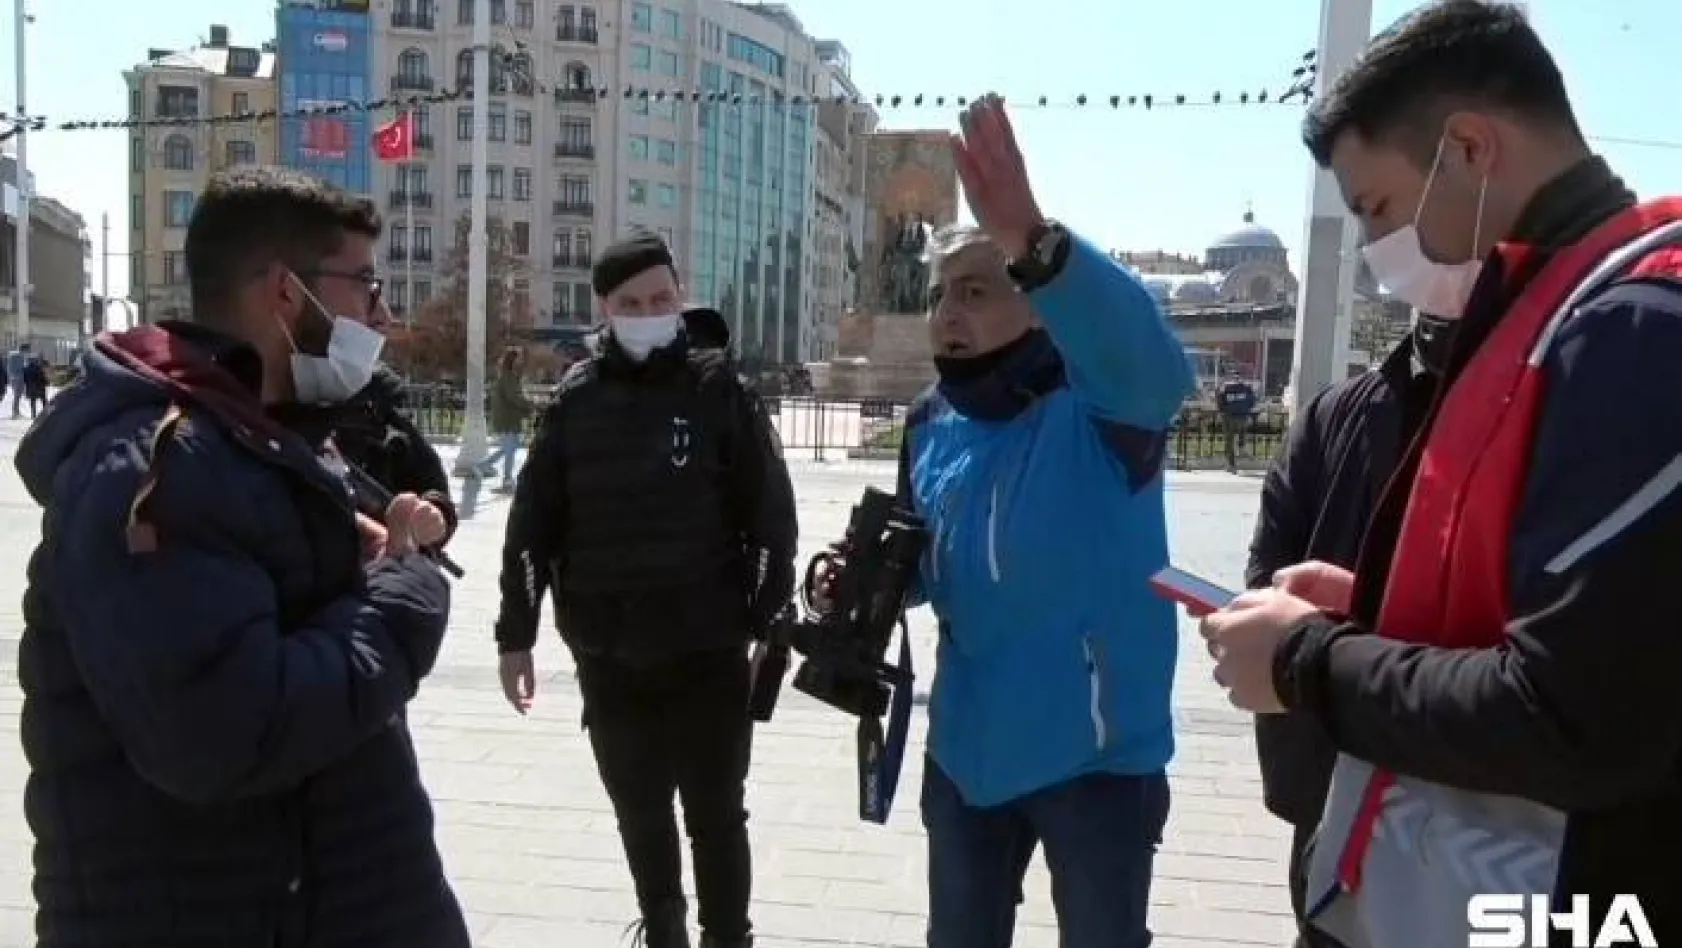 Taksim Meydan'da seyyar satıcılar gazeteciyi darp etti